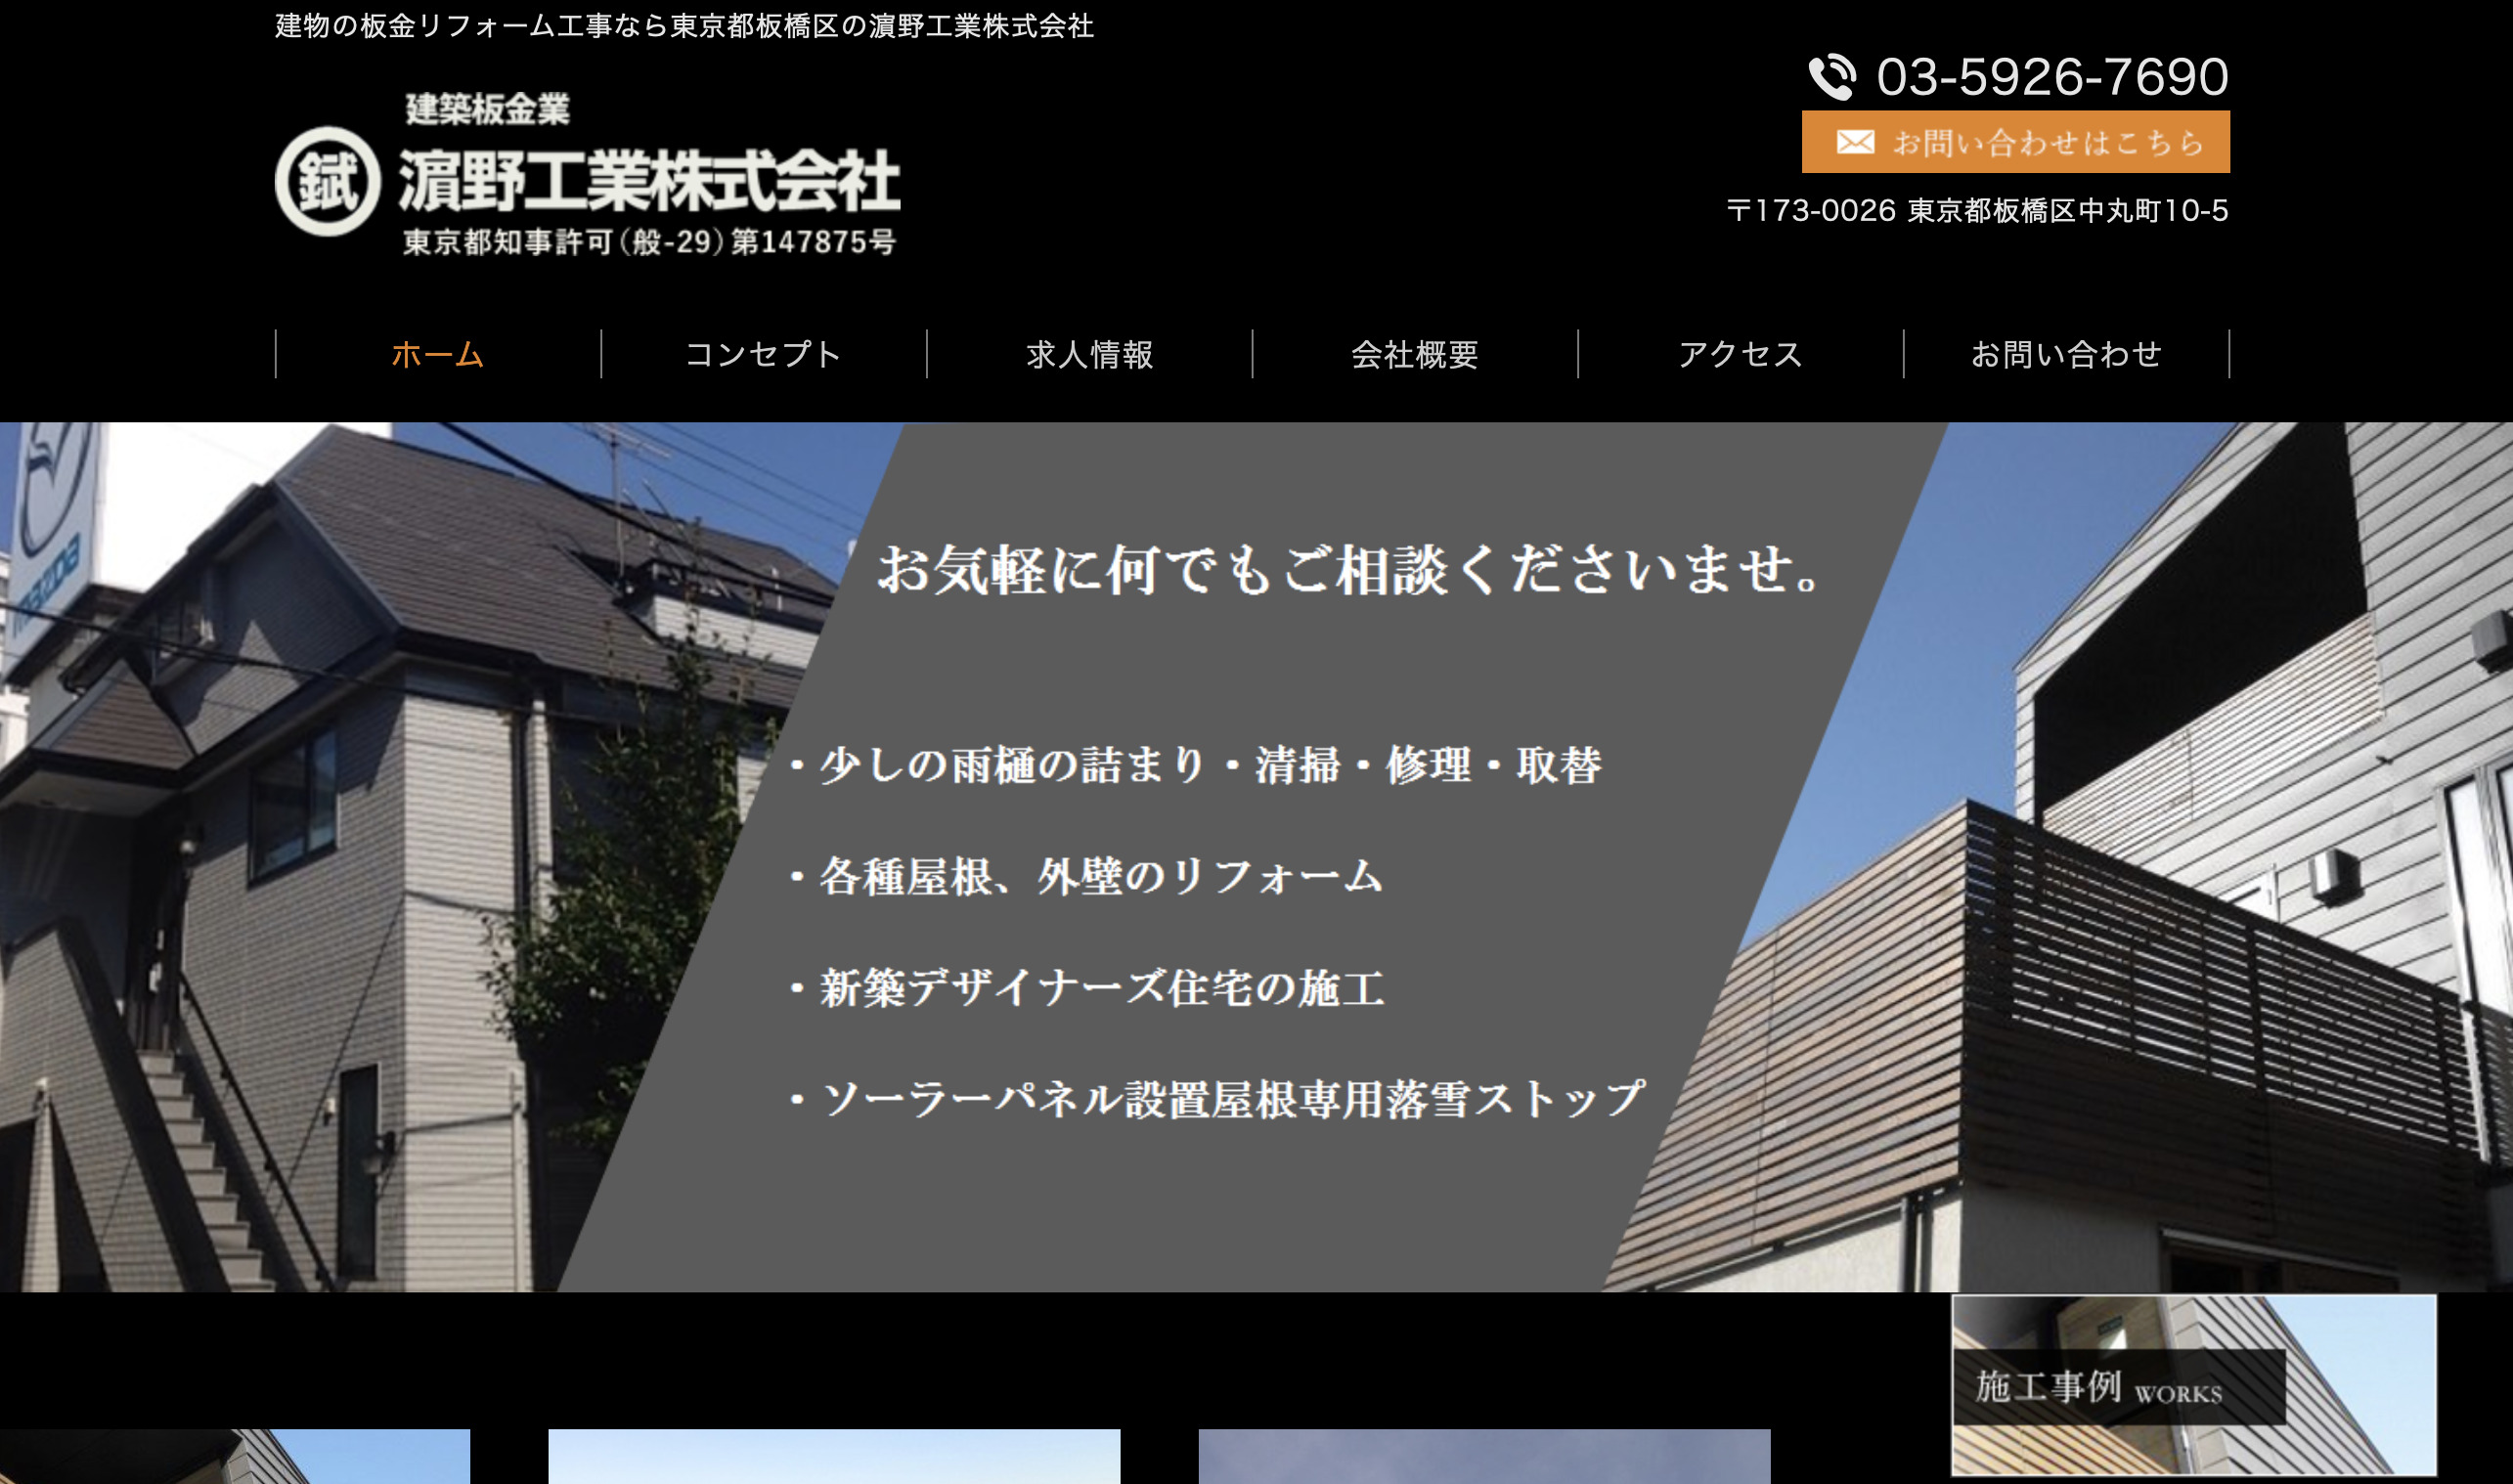 「濱野工業株式会社」ホームページ